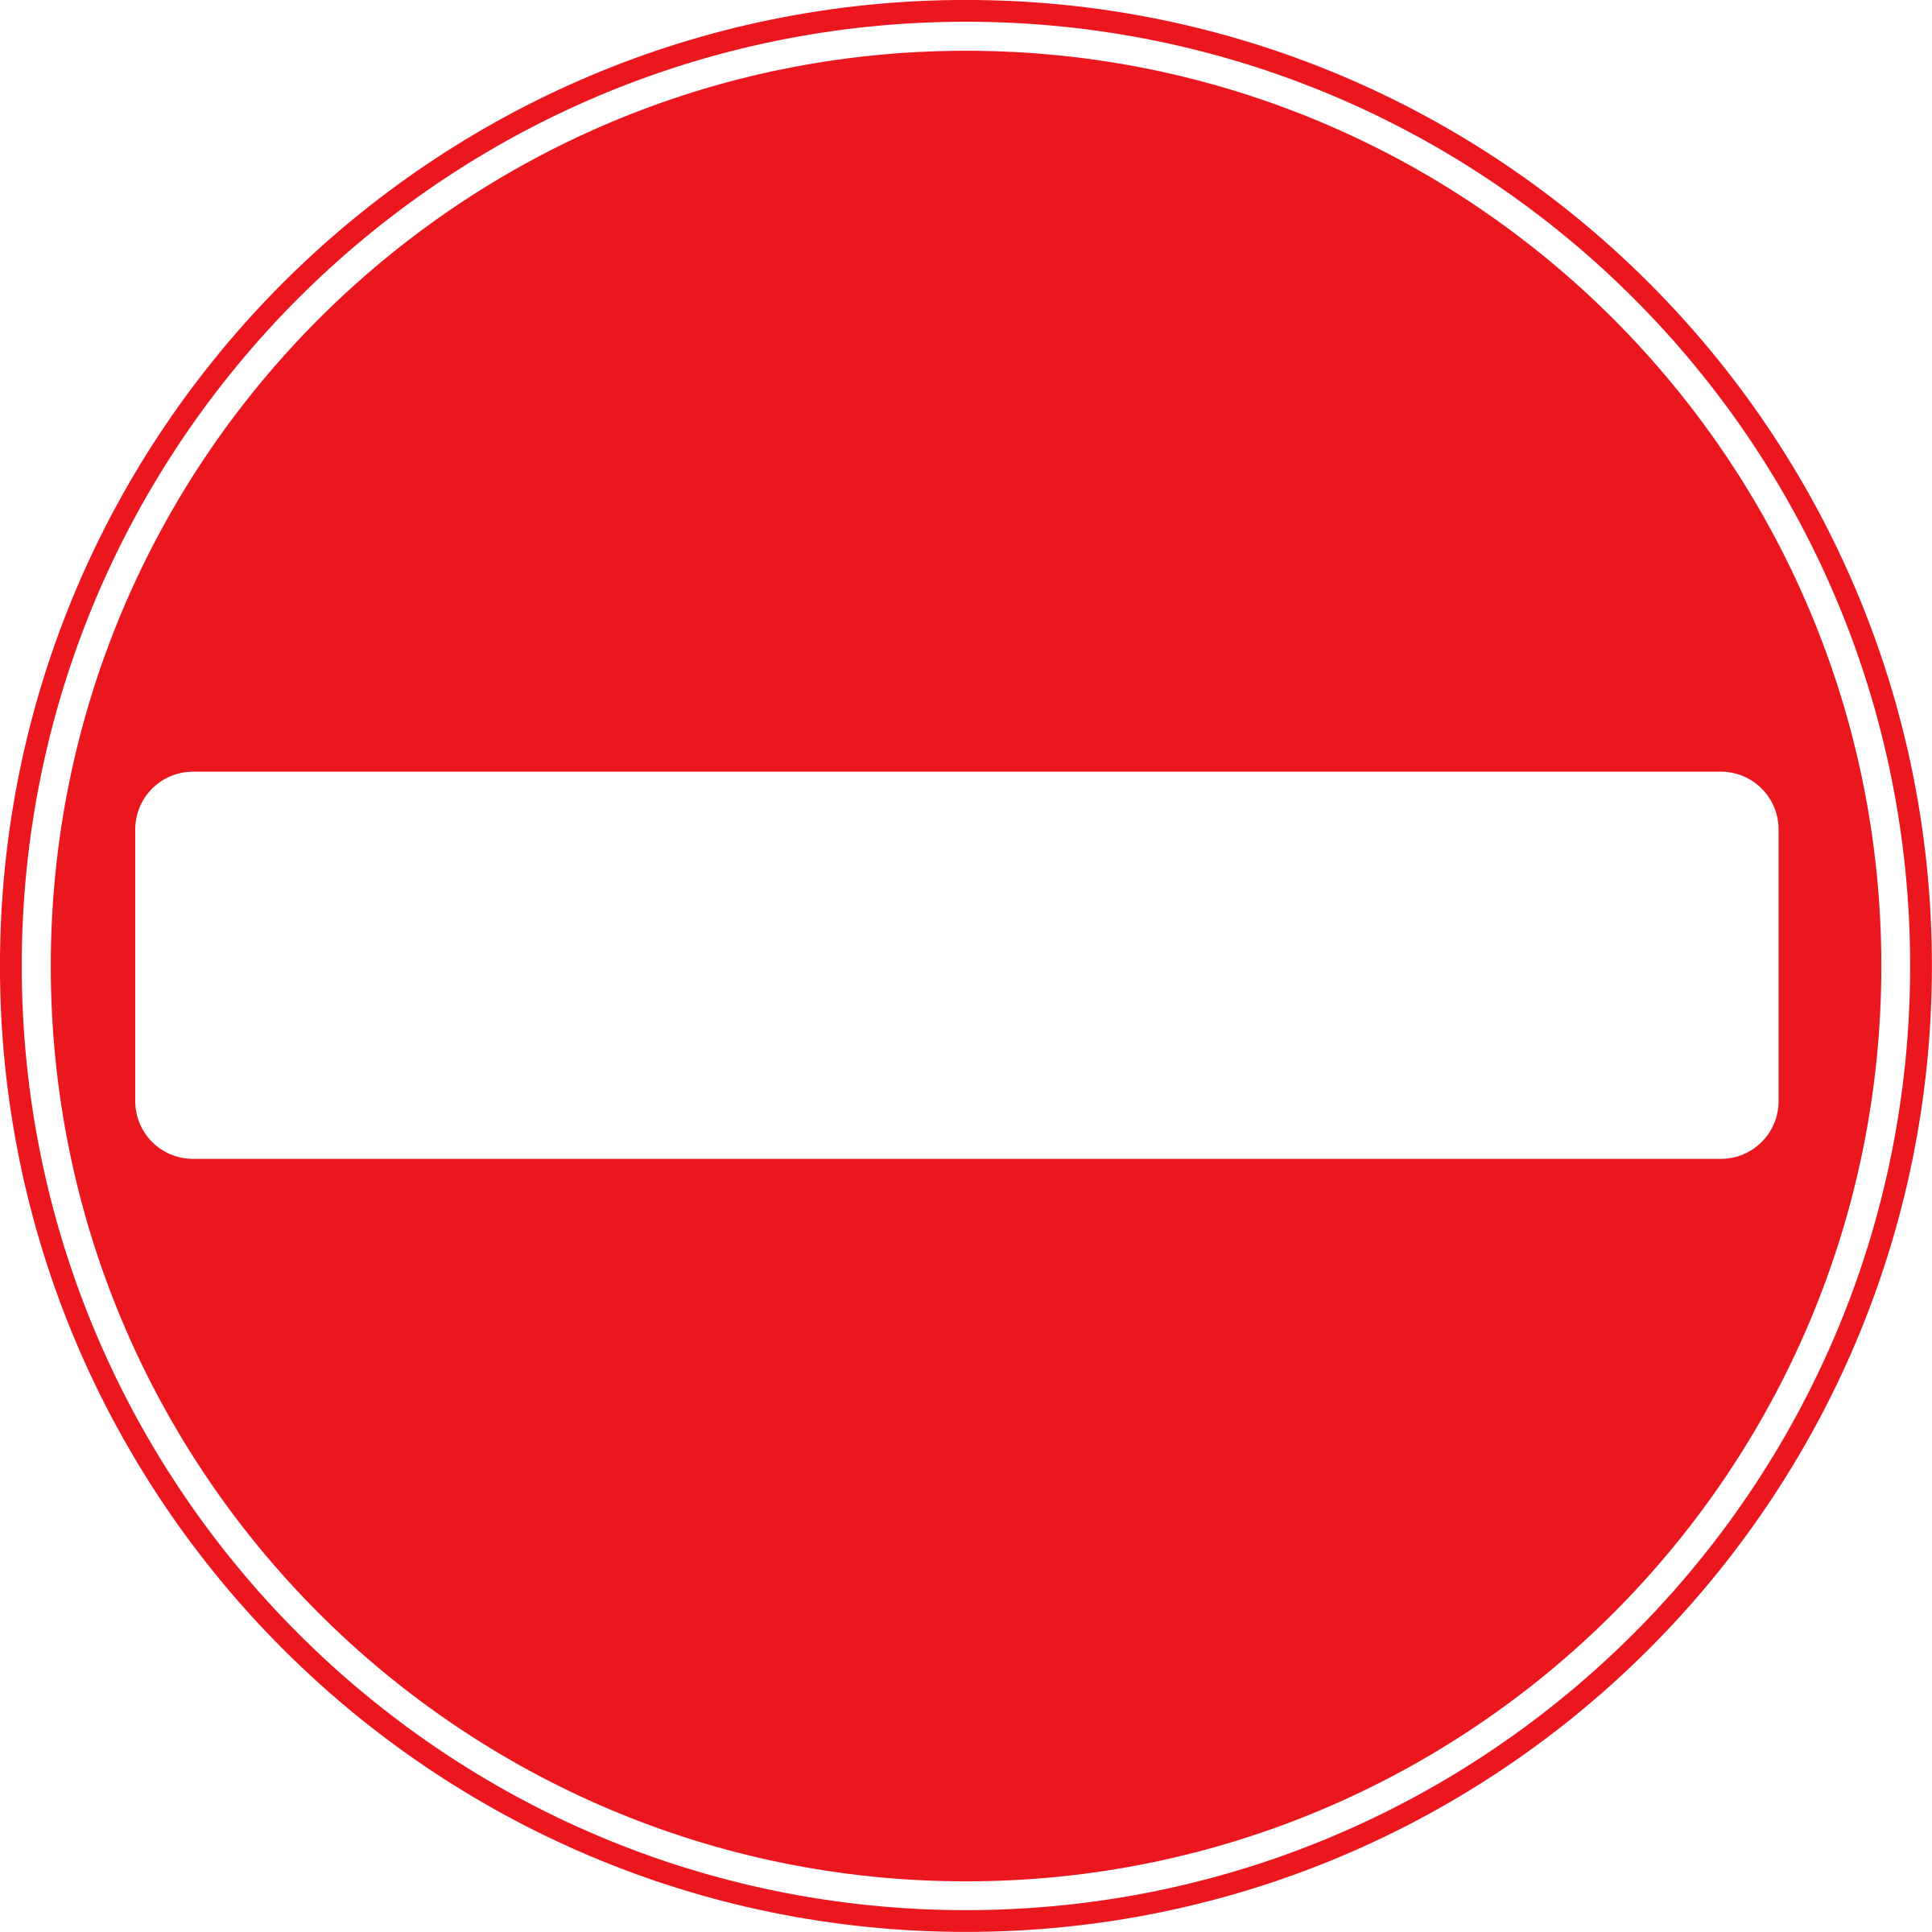 Roadsign No Entry